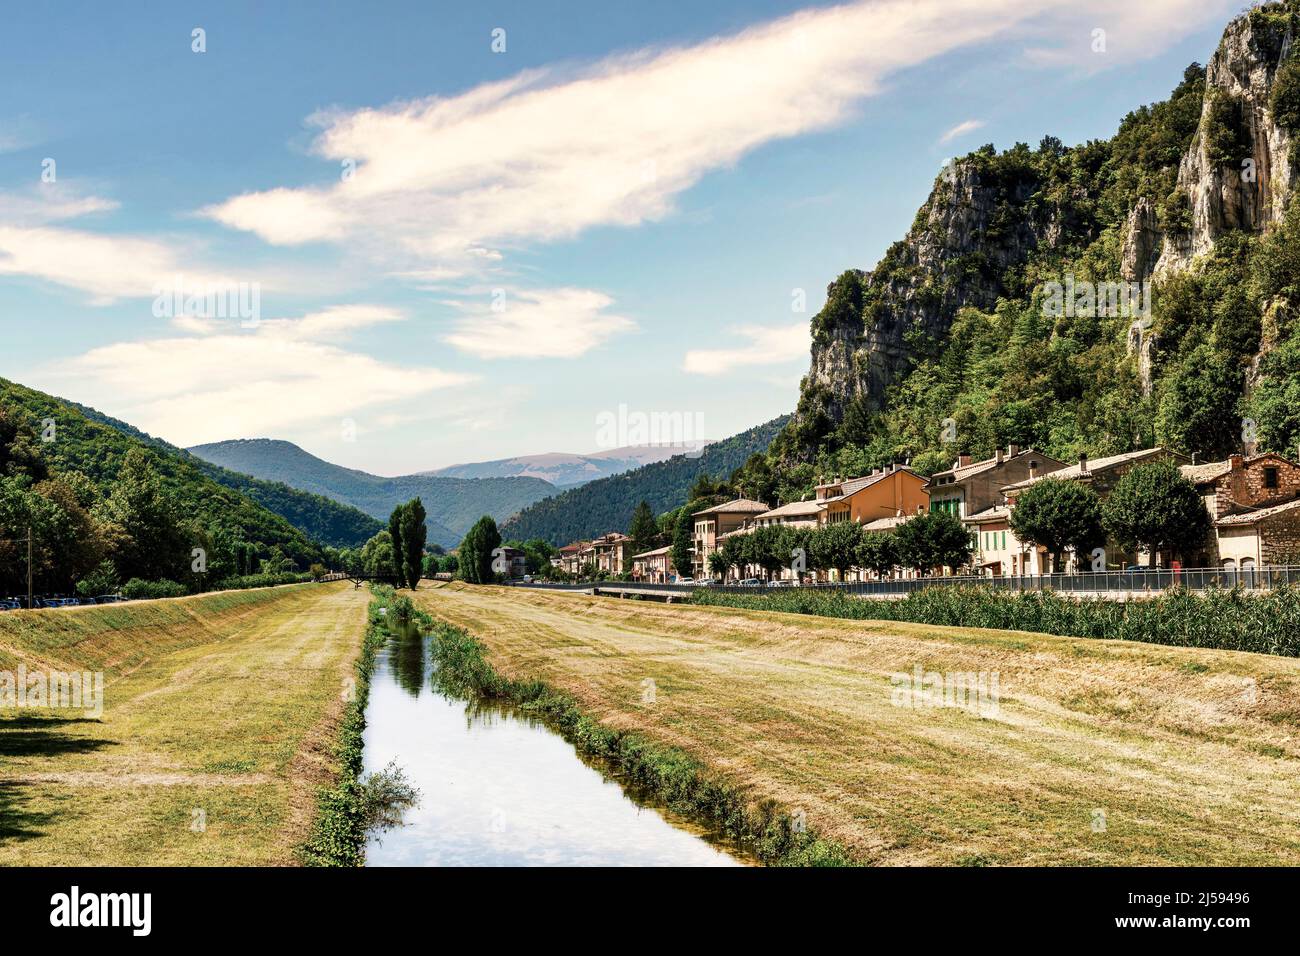 Belle scène photo- Paysage- vue angulaire de la province de Pioraco de Macerata- Italie Banque D'Images